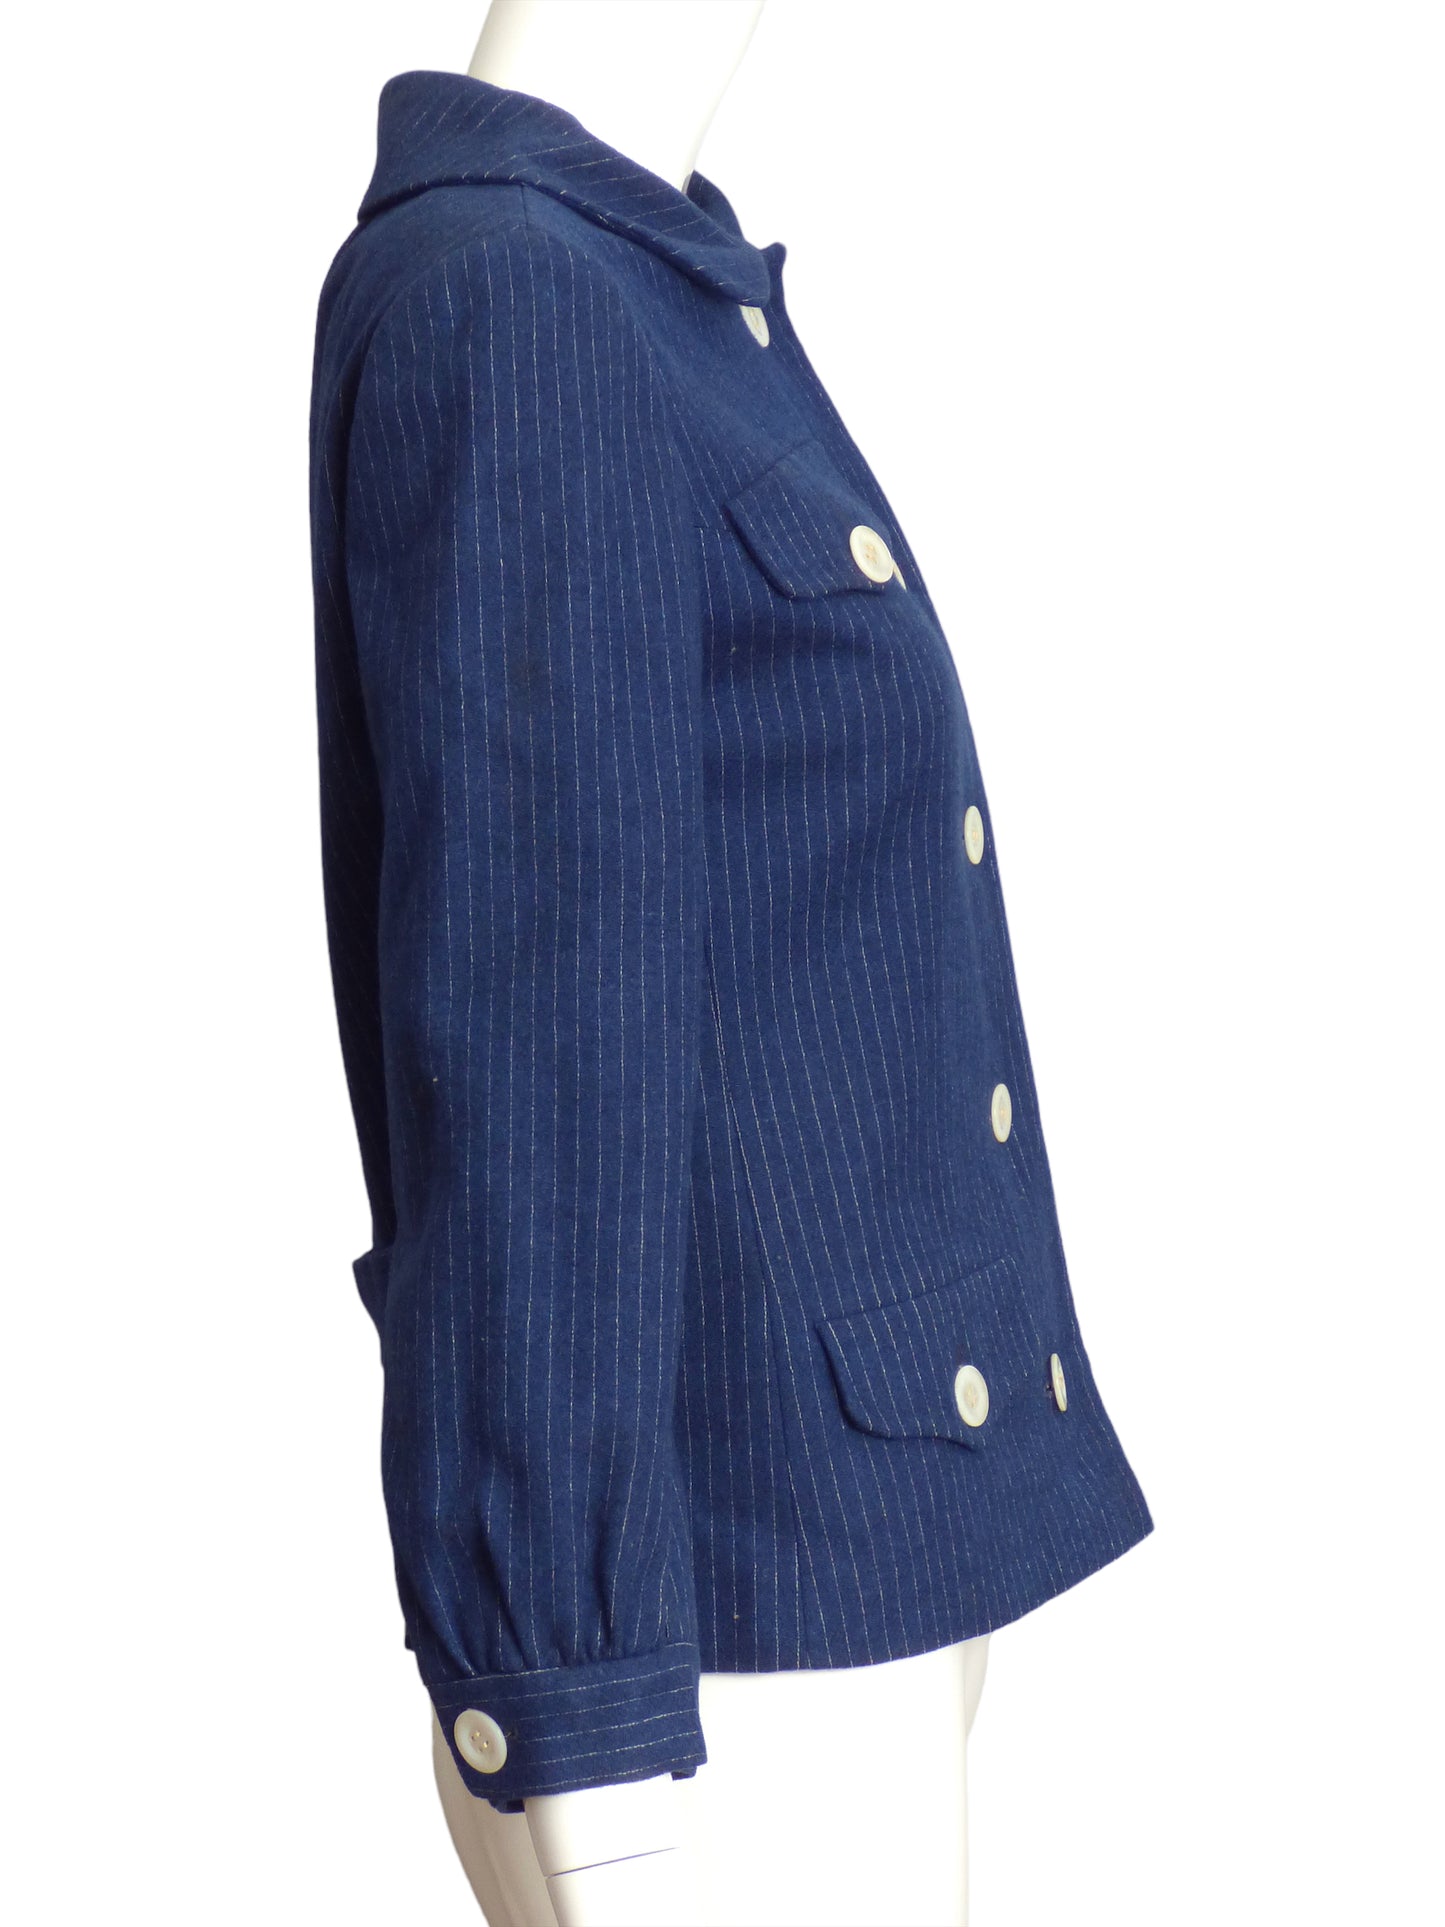 JACQUES HEIM- 1950s Blue & White Wool Stripe Blazer, Size 4